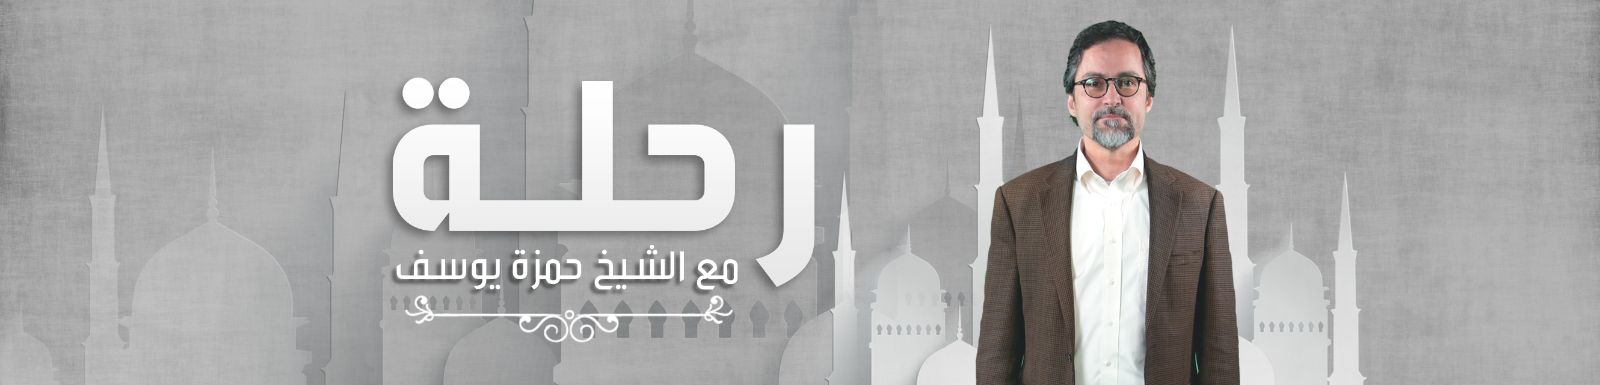 تحميل برنامج رحلة مع حمزة يوسف الحلقة 25 شاهد نت 2016